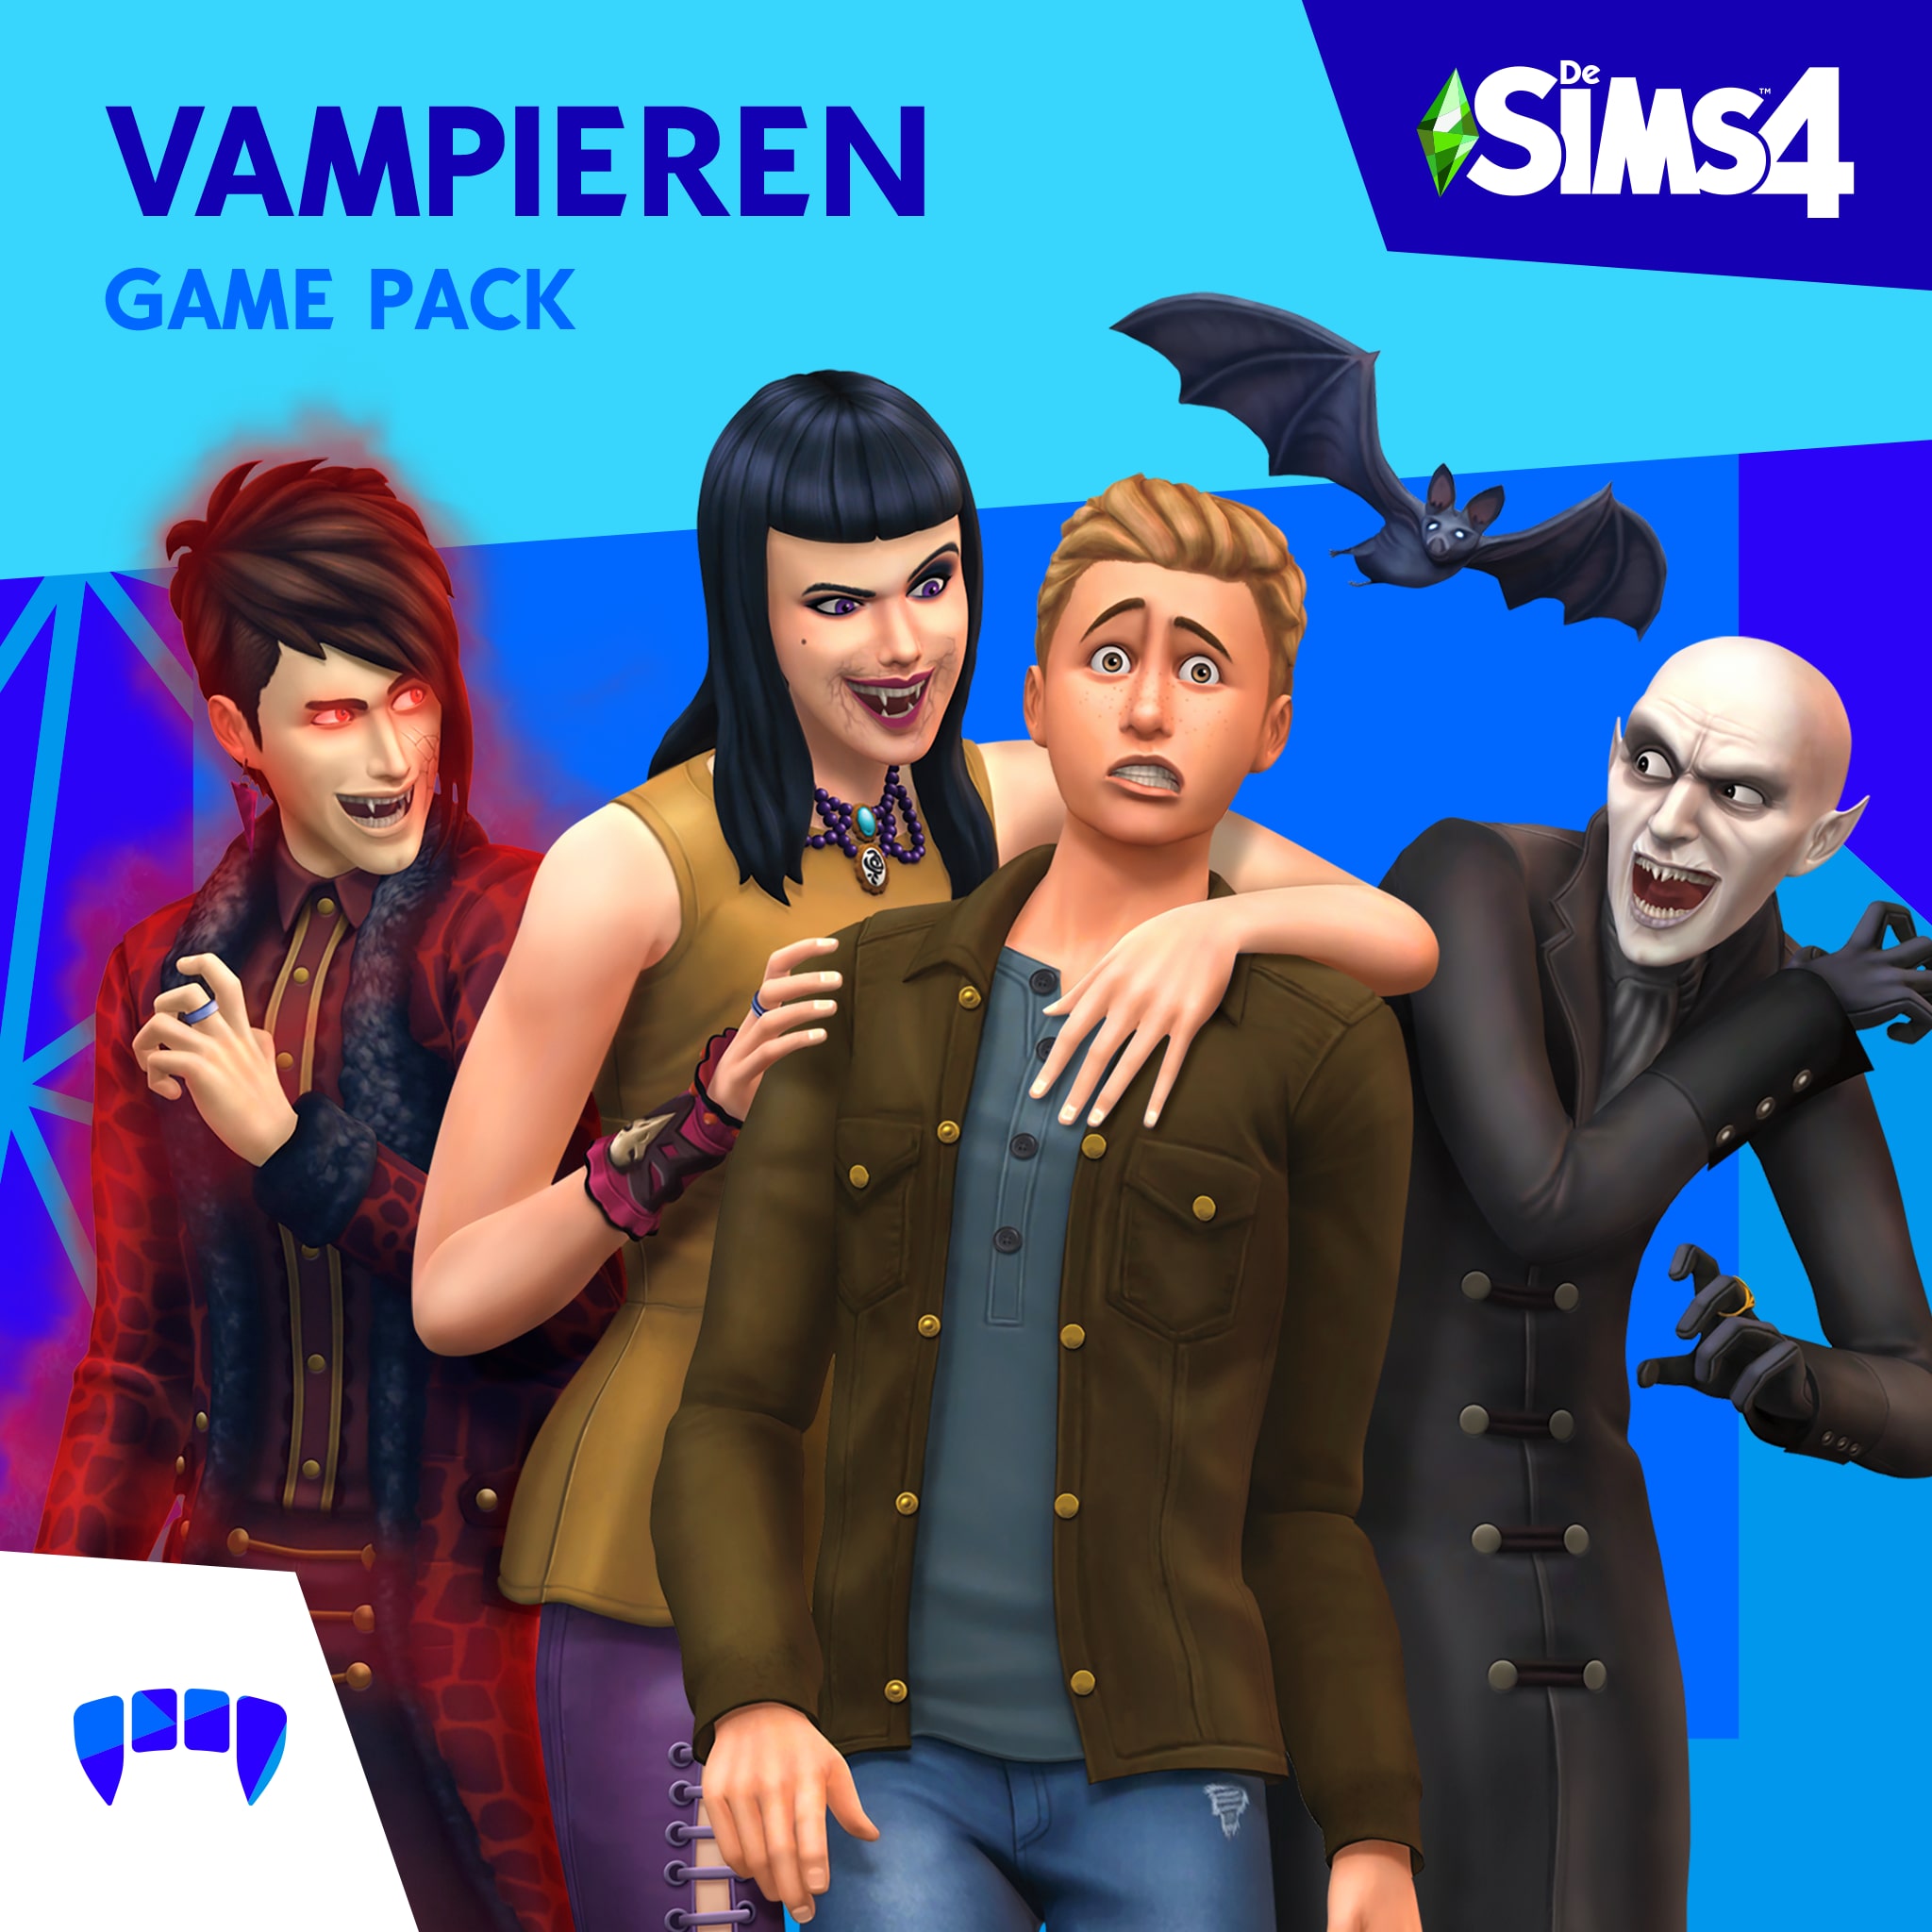 De Sims™ 4 Vampieren